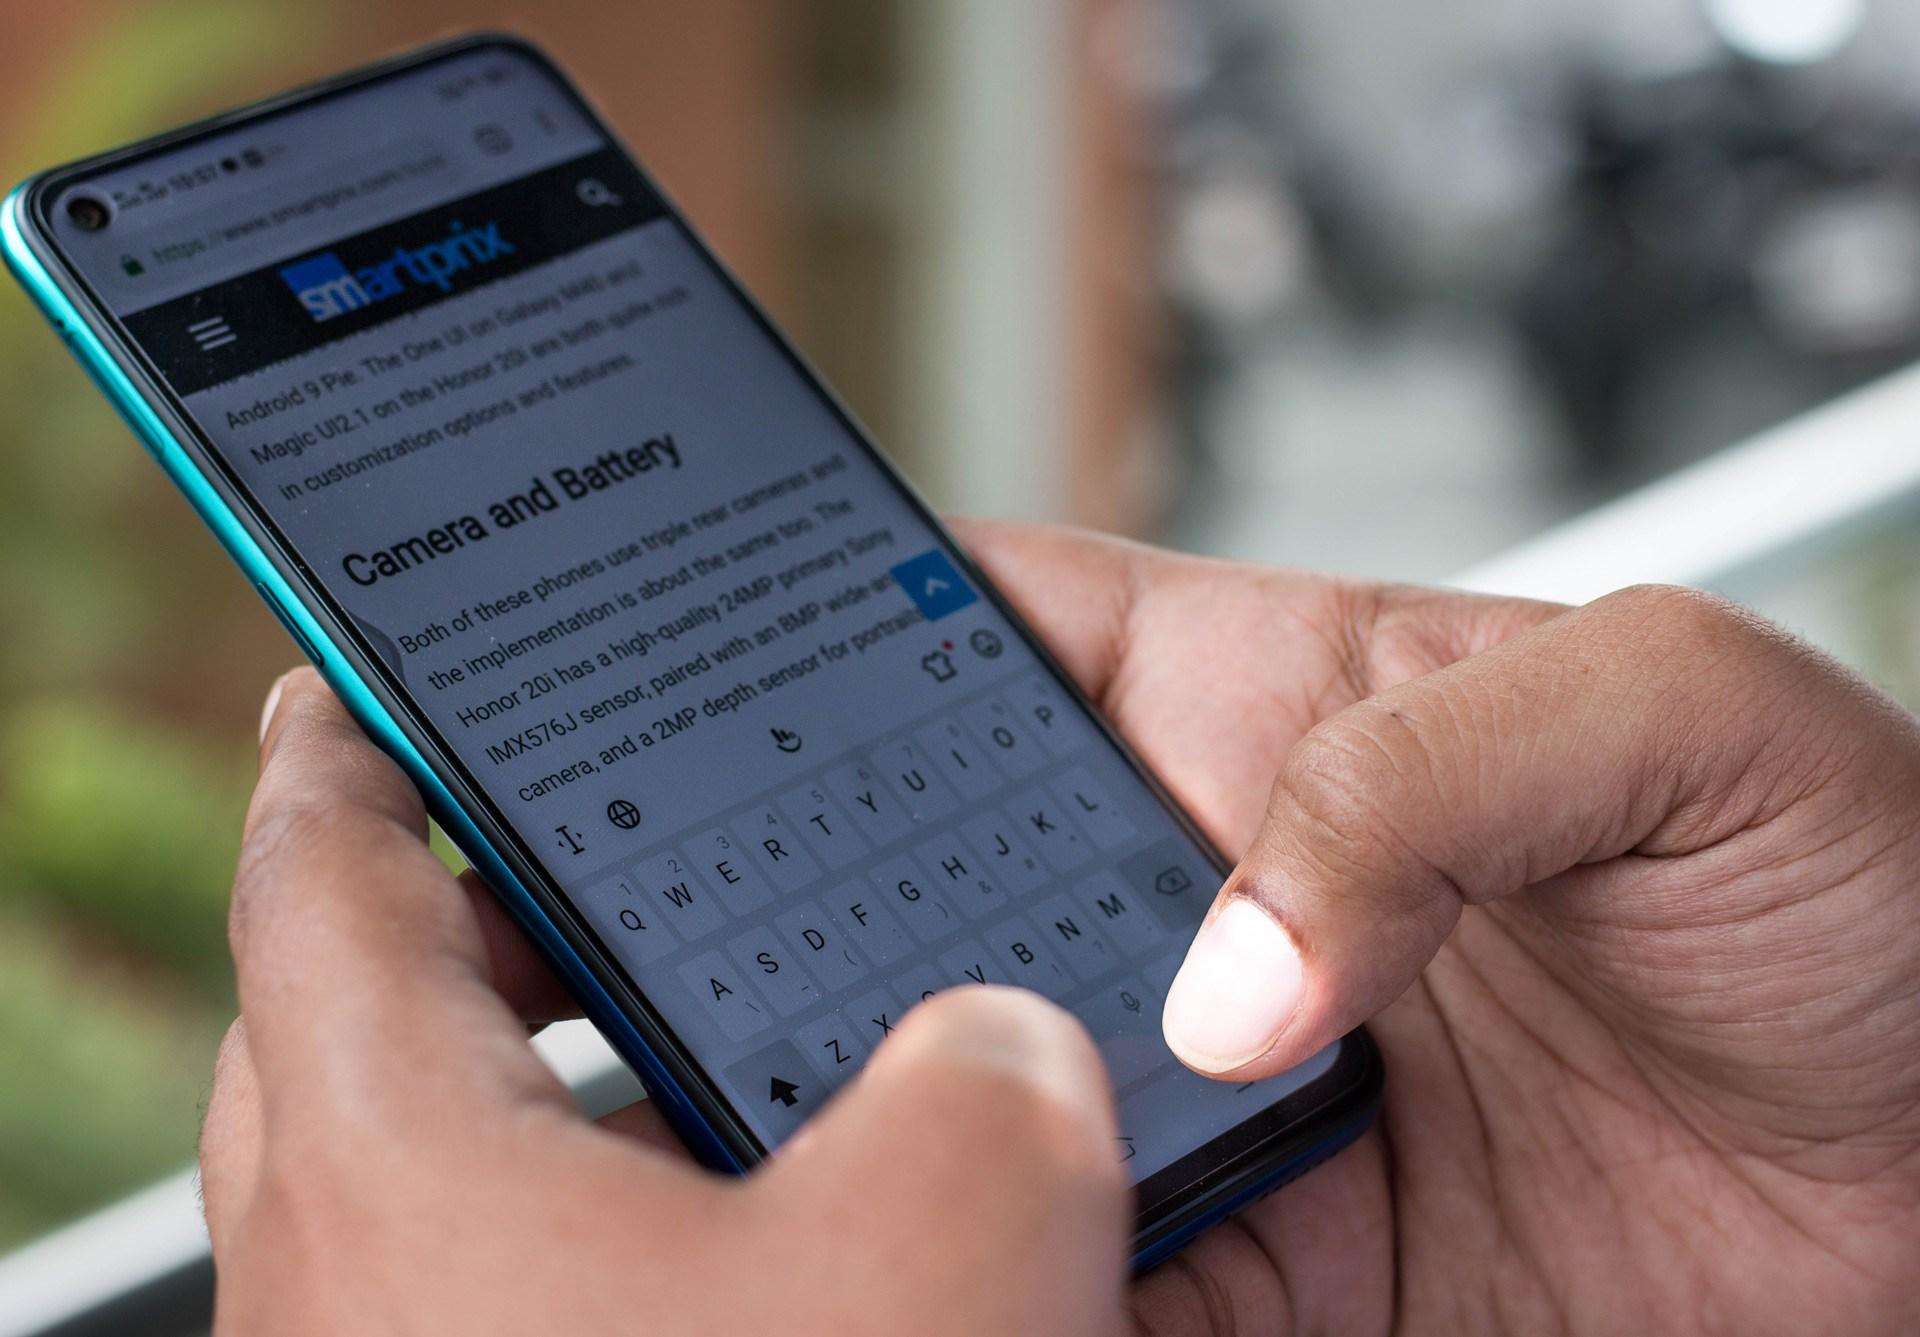 Vivo Z1 Pro स्मार्टफोन को आप ओपन सेल में खरीद सकते हो, जानें